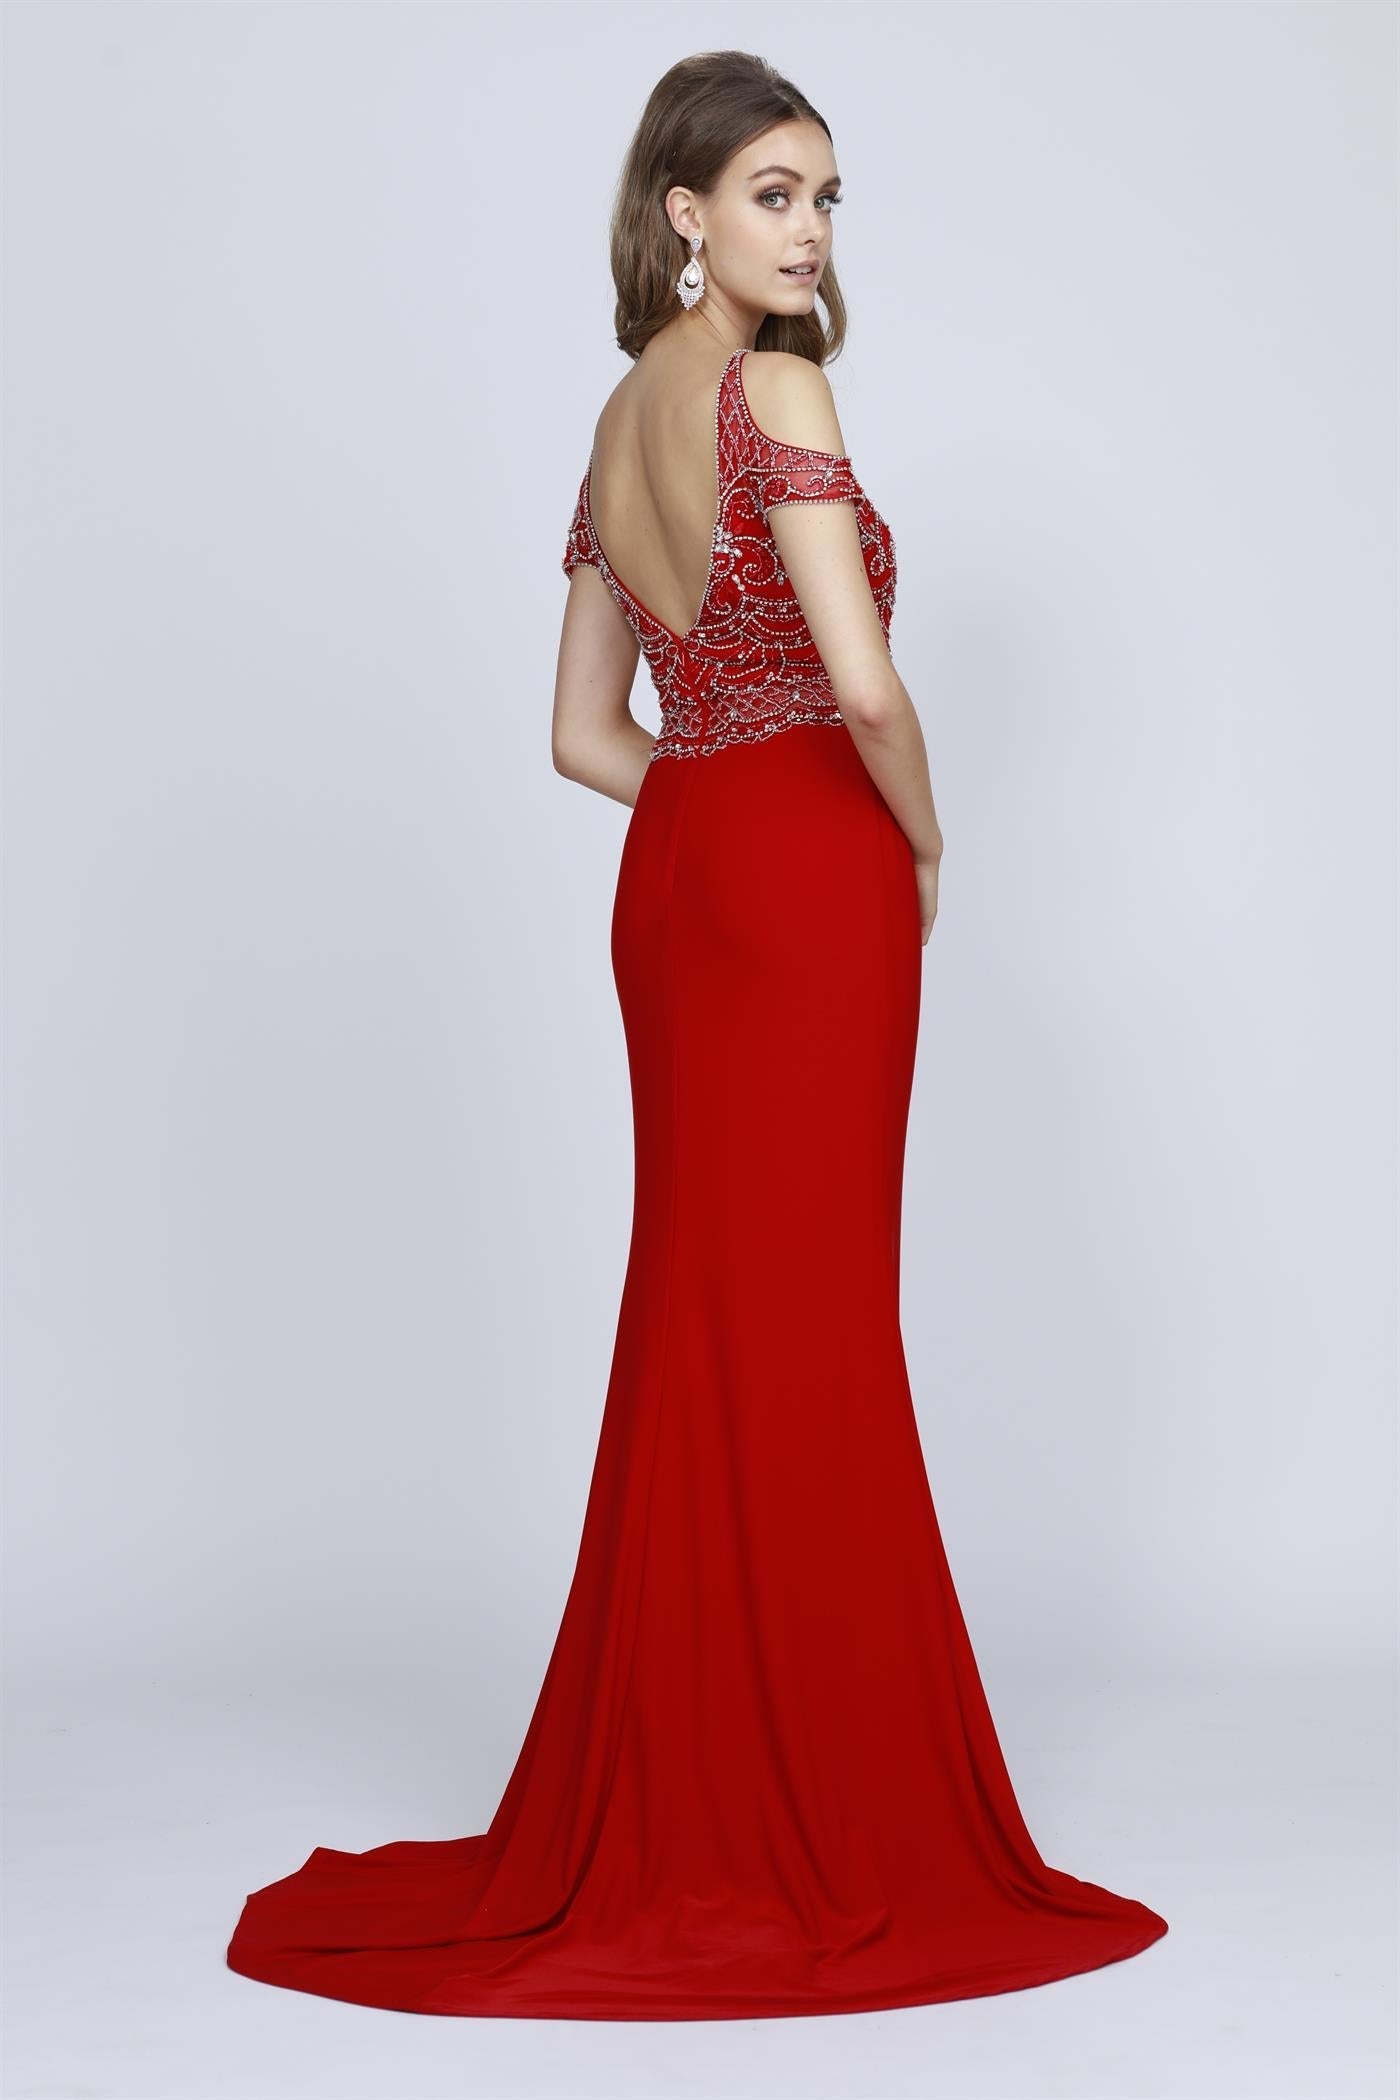 Embellished Bodice Off Shoulder Long Evening & Prom Dress JT660 Elsy Style Prom Dress